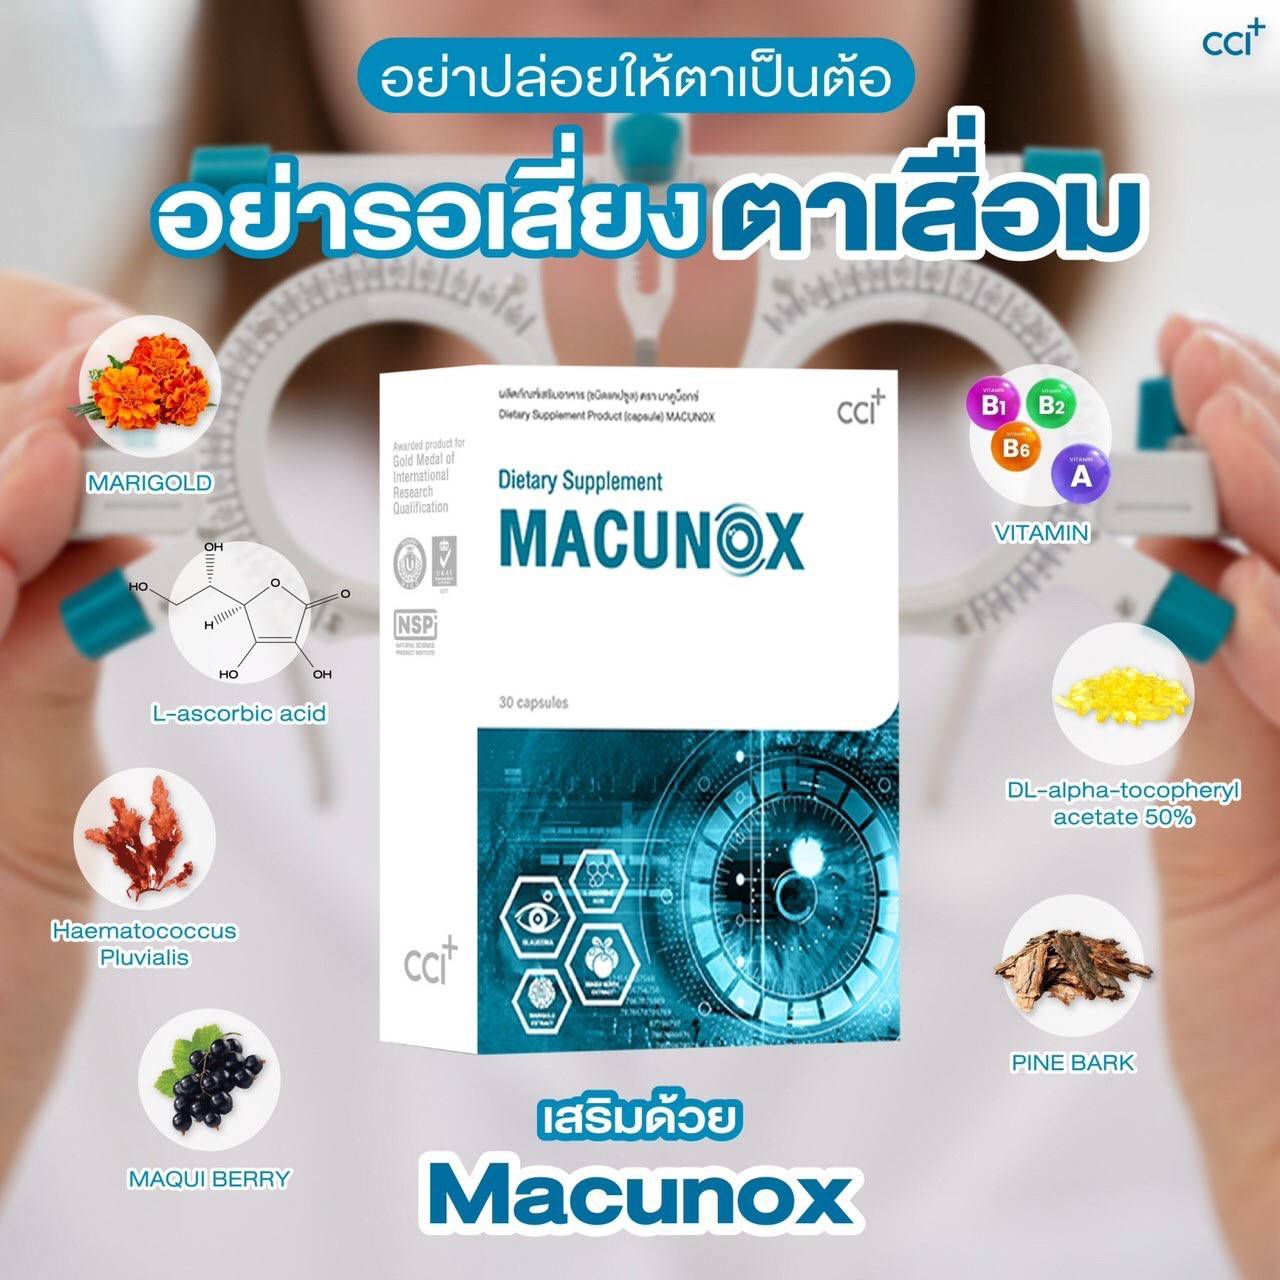 Macunox มาคูน็อกซ์